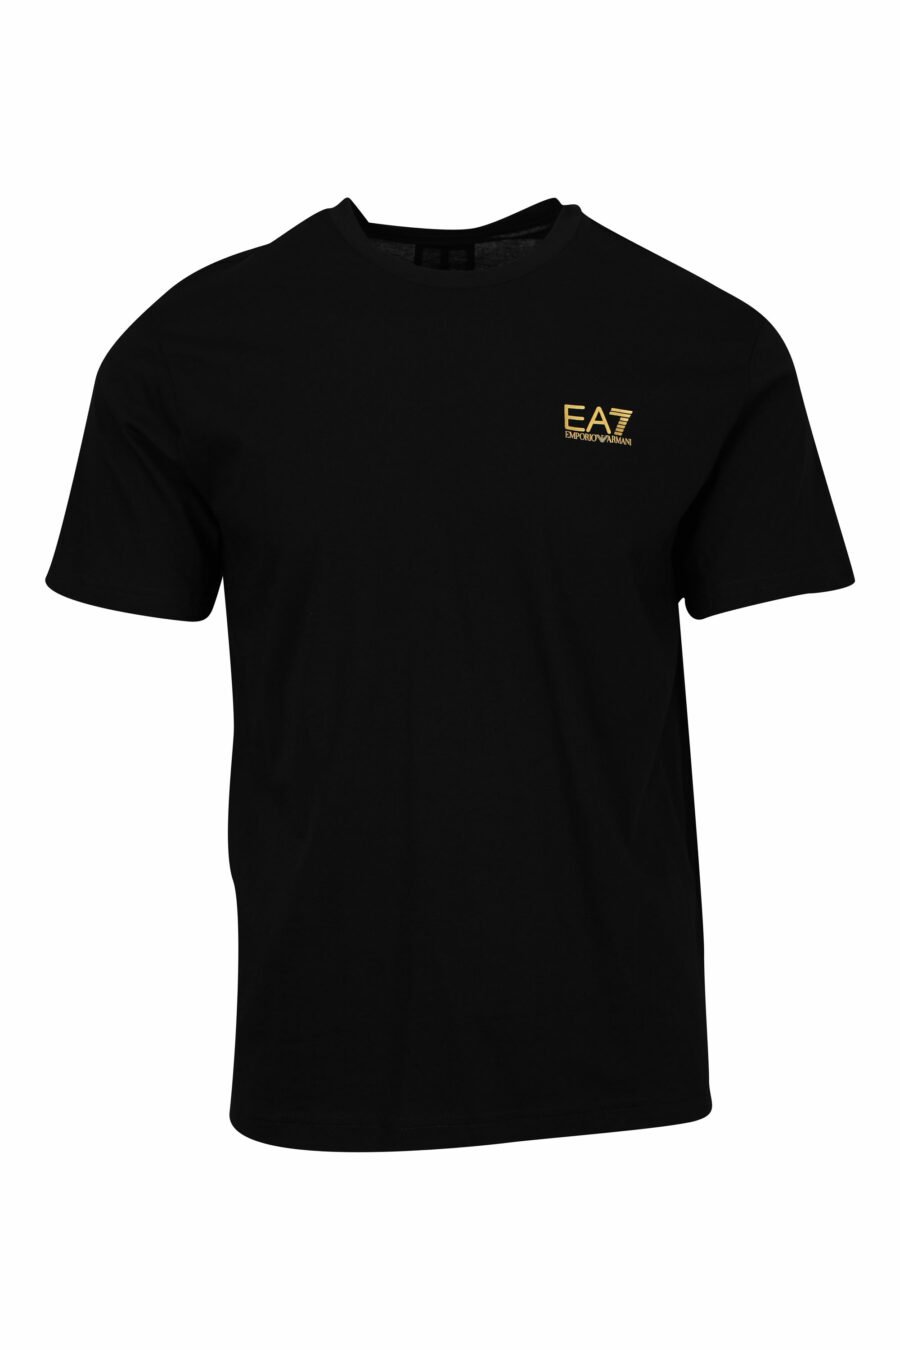 Camiseta negra con maxilogo "lux identity" dorado vertical detrás - 8057970715047